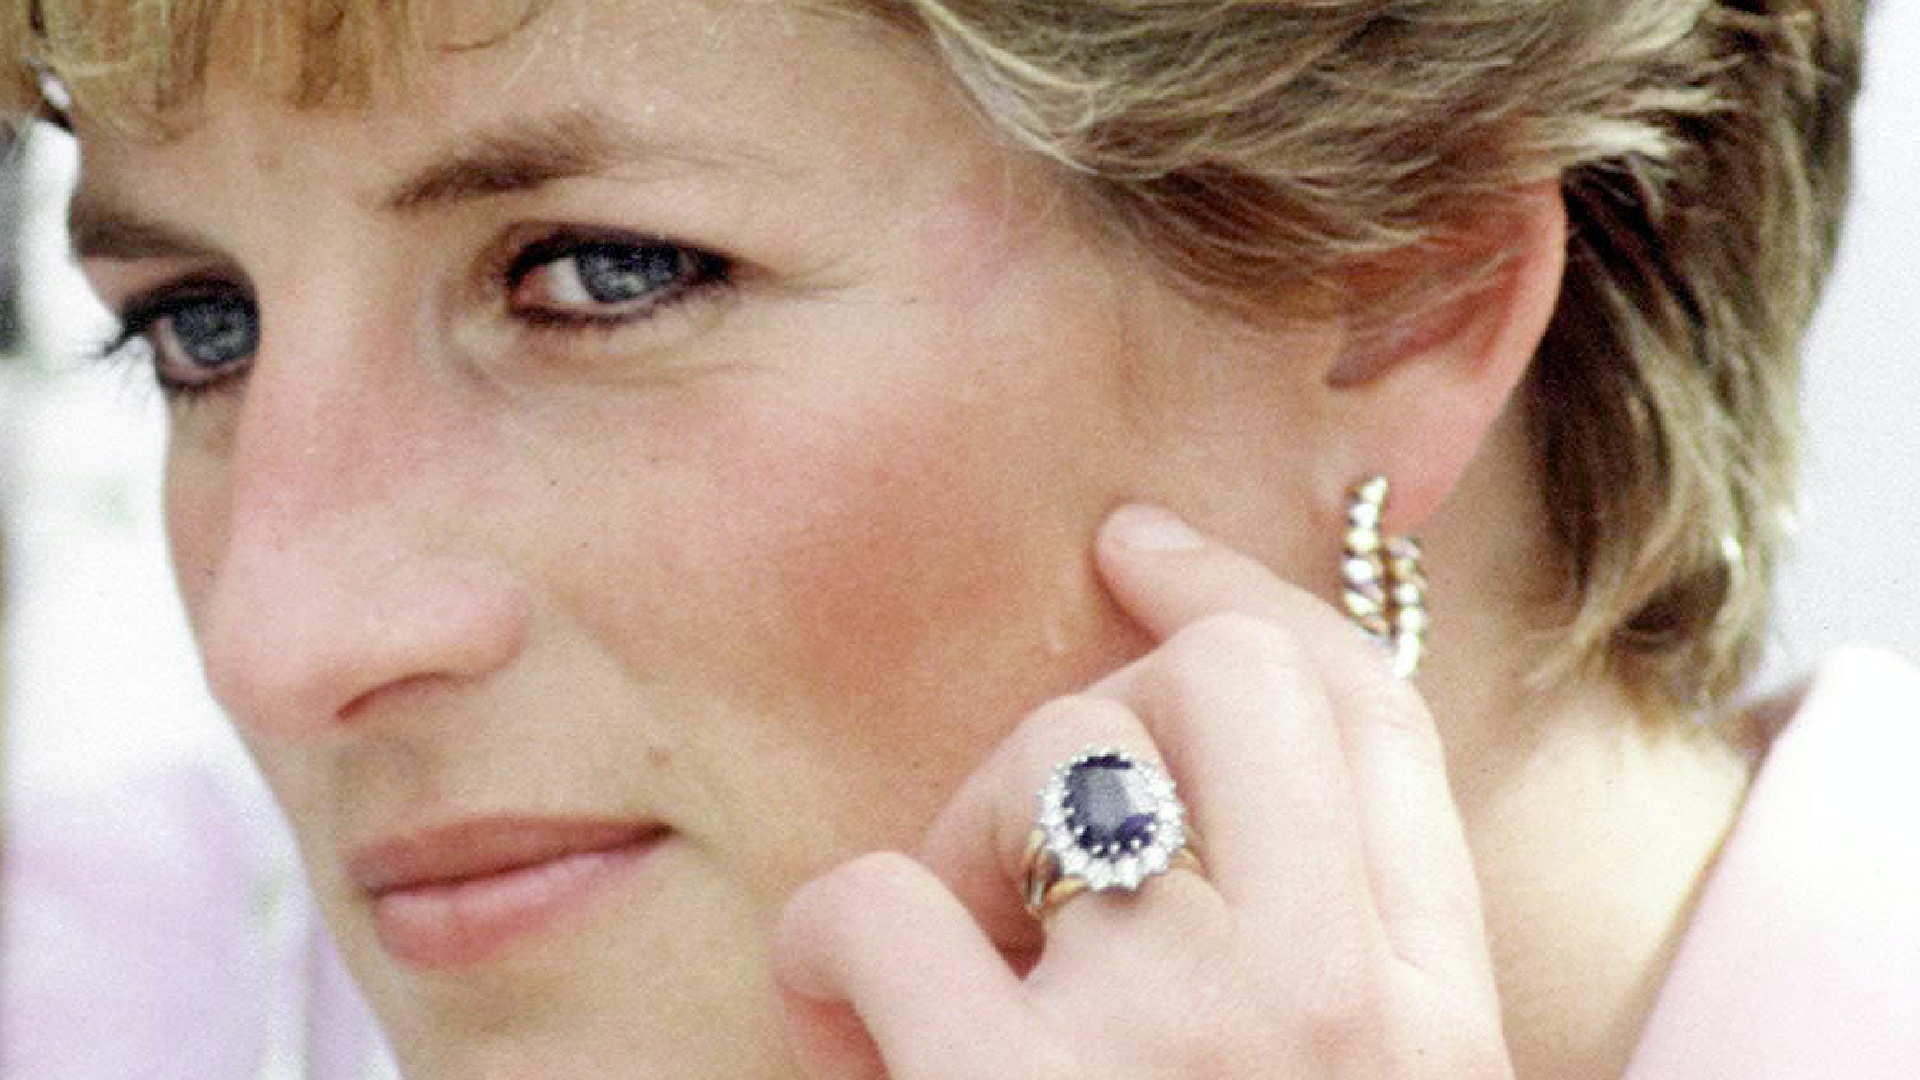 <p>El anillo de Kate Middleton perteneció antes que a ella a la princesa Diana, la madre de William. Curiosamente, cuando se comprometió con Su Alteza Real el Príncipe de Gales, Diana optó por elegir su propio anillo en lugar de una de las joyas reales. Curiosamente, el anillo pertenecía al príncipe Harry, pero en el momento en el que su hermano se prometió con Kate, no dudó en cedérselo para que ella lo usara.</p>